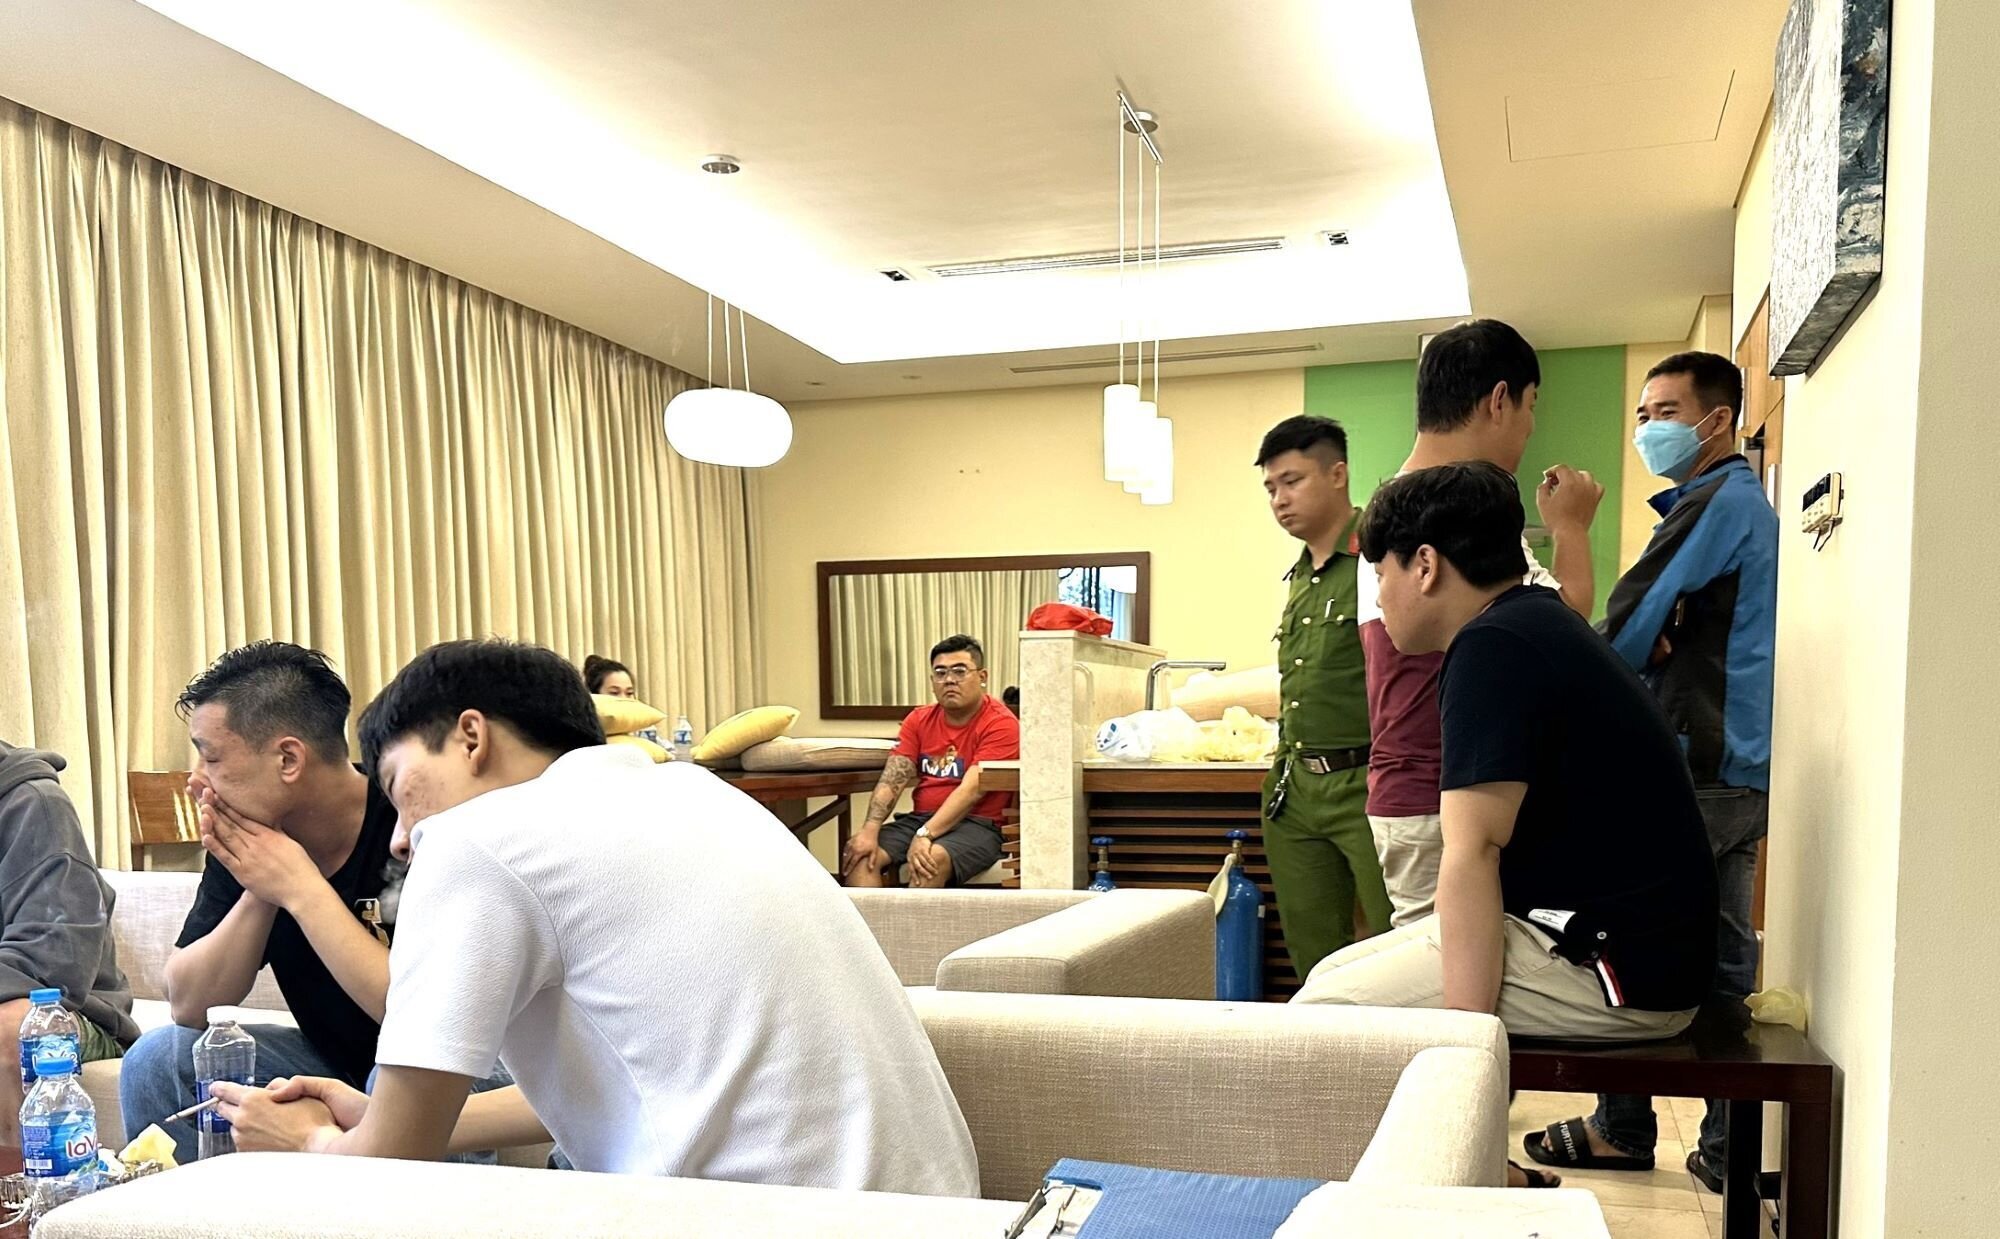 Nhóm người nước ngoài tổ chức tiệc ma túy trong biệt thự ở Đà Nẵng - 1